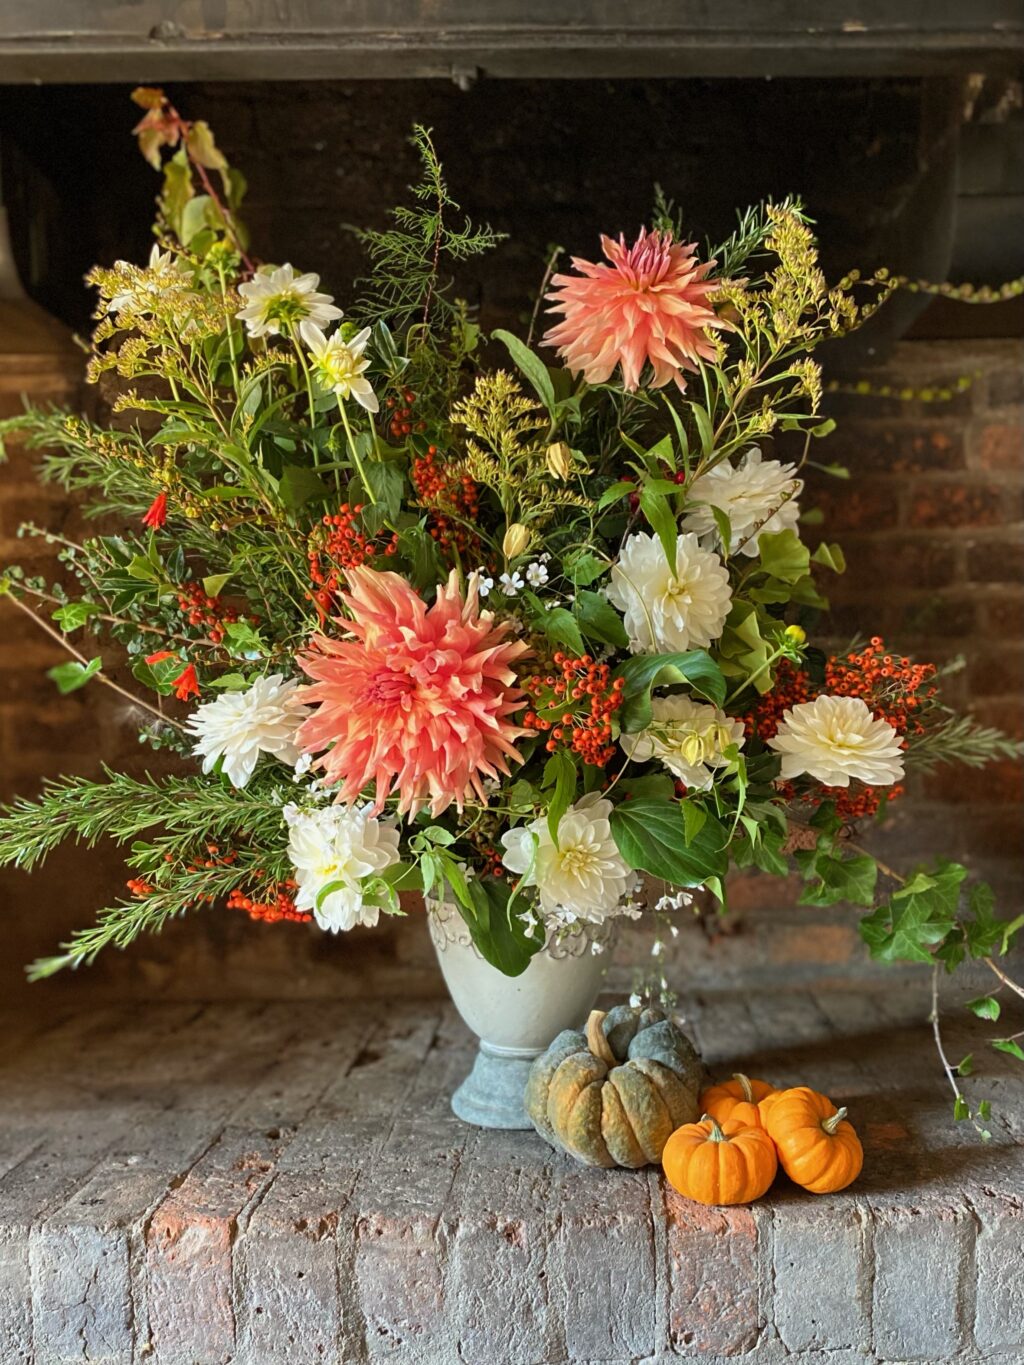 An autumn vase arrangement with mini pumpkins